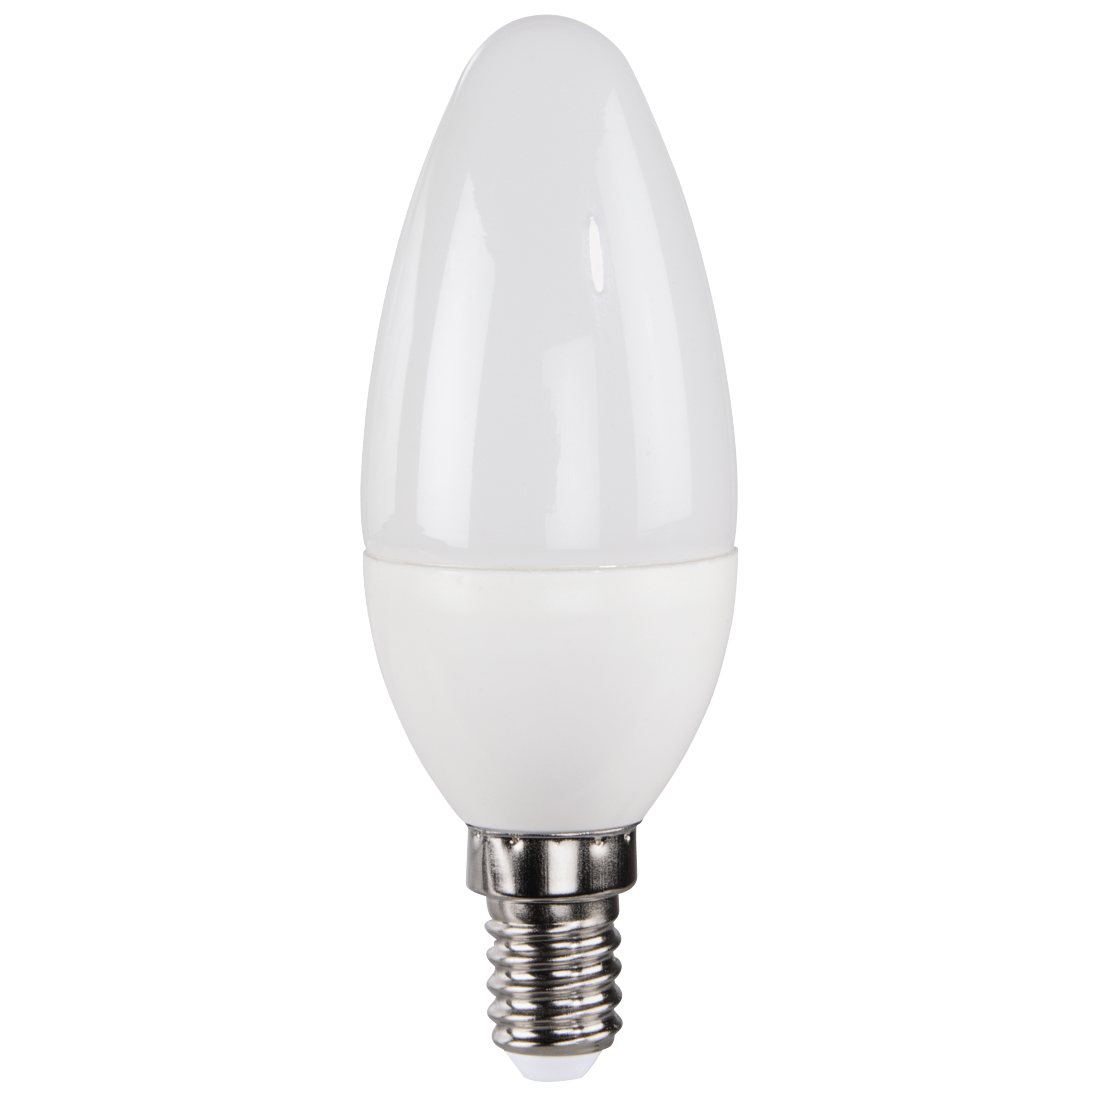 abx High-Res Image - Xavax, Ampoule LED, E14, 350lm rempl. ampoule bougie 32W, blanc chaud